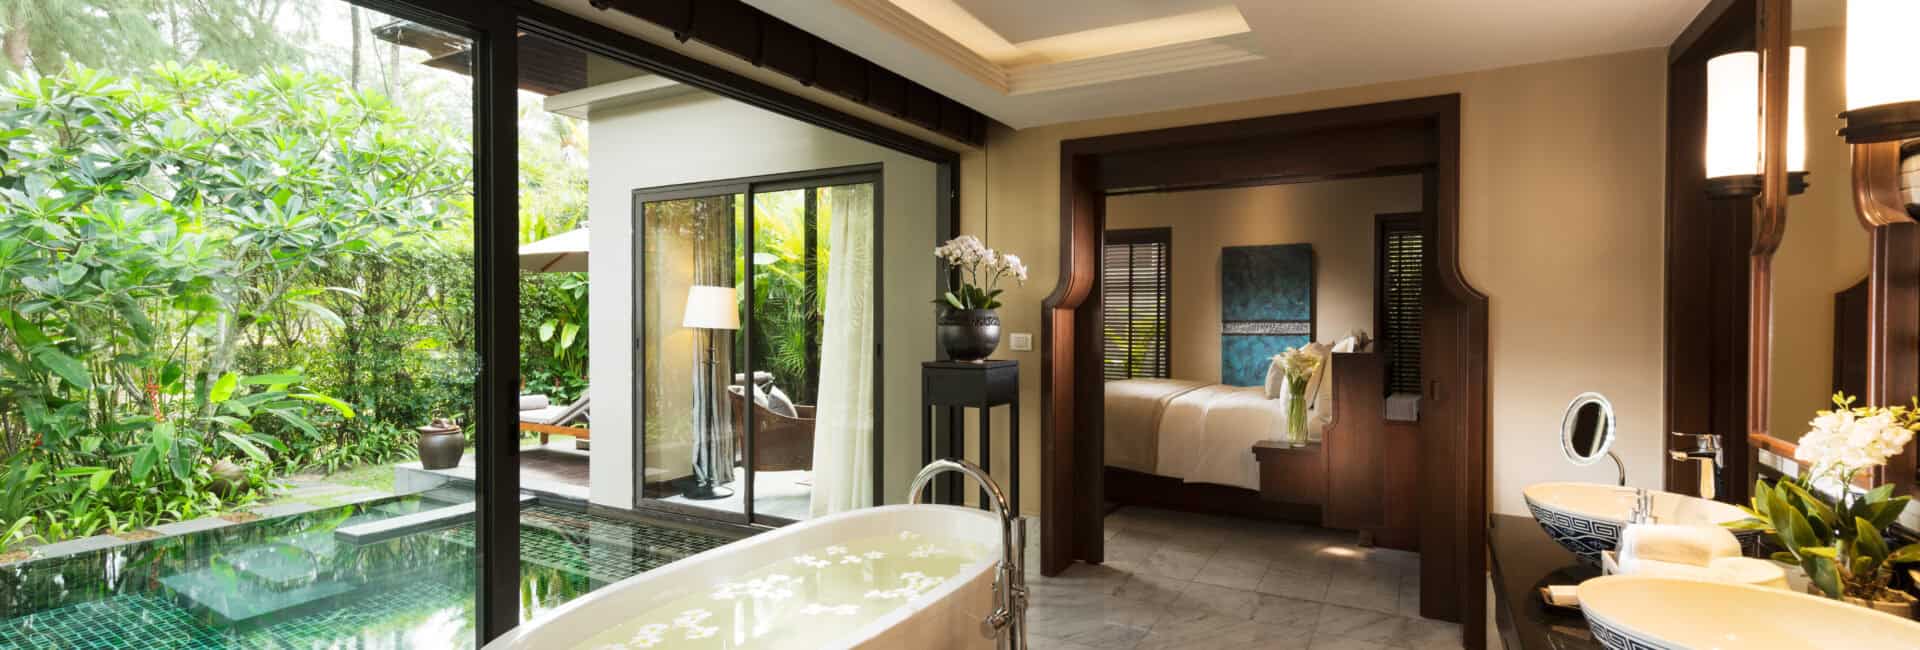 Anantara Layan Phuket - Beach Access & Pool Villa Room